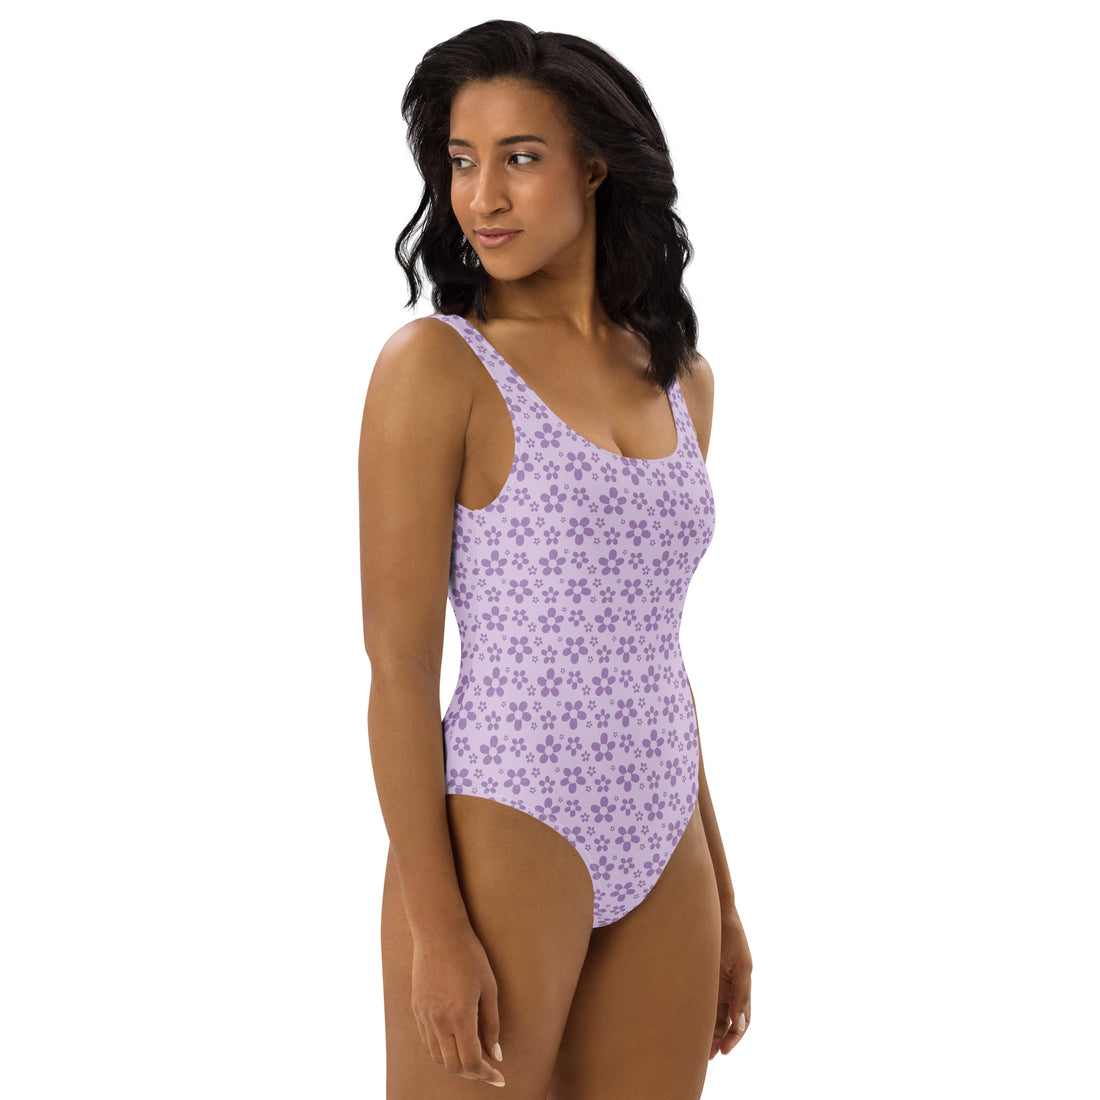 Monochrome Lavender One-Piece Swimsuit